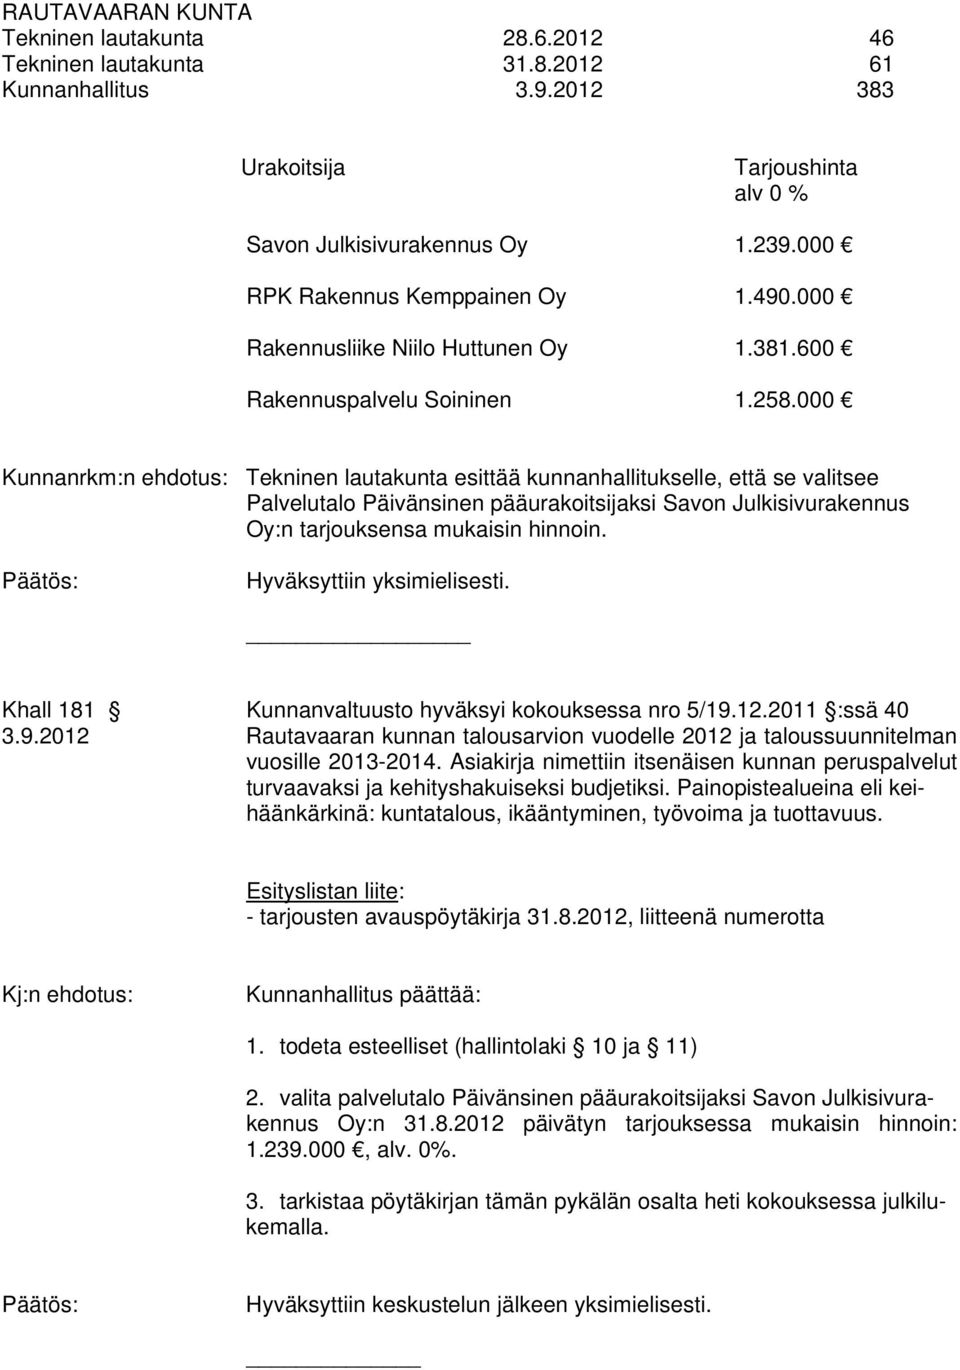 Hyväksyttiin yksimielisesti. Khall 181 Kunnanvaltuusto hyväksyi kokouksessa nro 5/19.12.2011 :ssä 40 3.9.2012 Rautavaaran kunnan talousarvion vuodelle 2012 ja taloussuunnitelman vuosille 2013-2014.